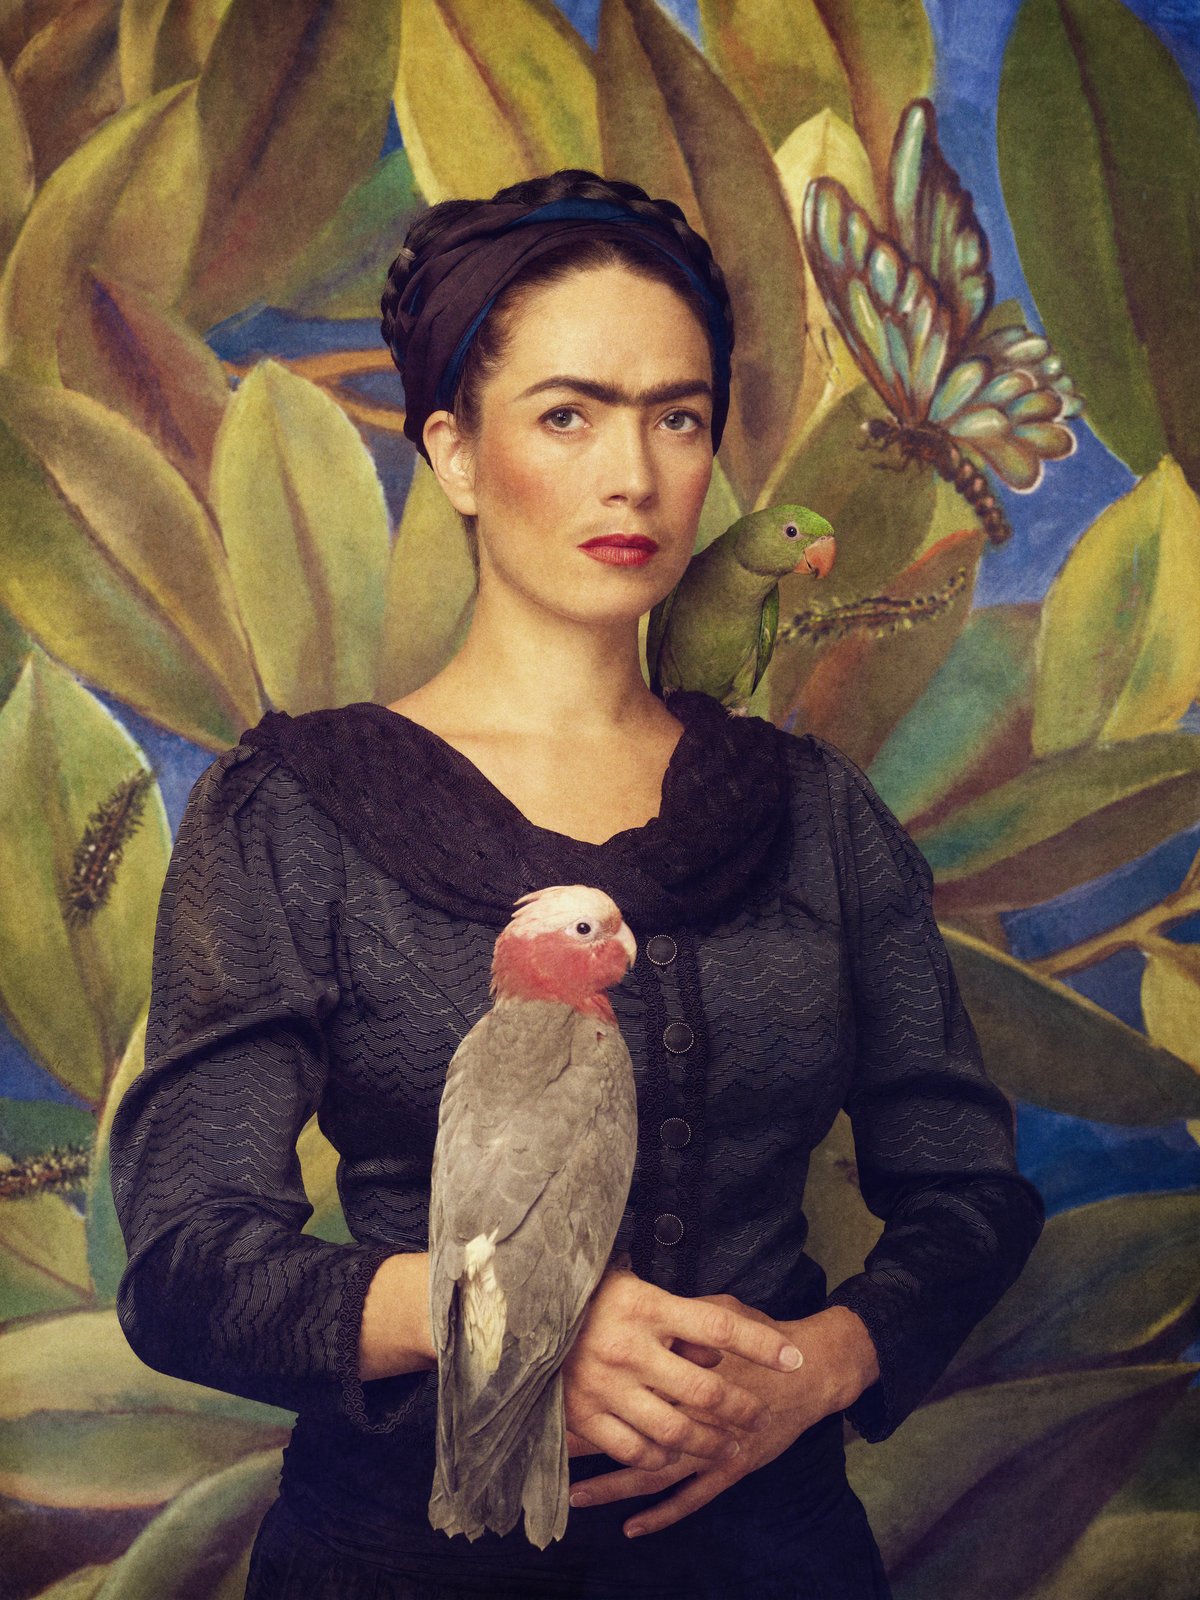 Tereza Kostková (38) – Frida Kahlo Mexická malířka z počátku 20. století. Byla manželkou malíře Diega Rivery a milenkou komunistického revolucionáře Lva Trockého.